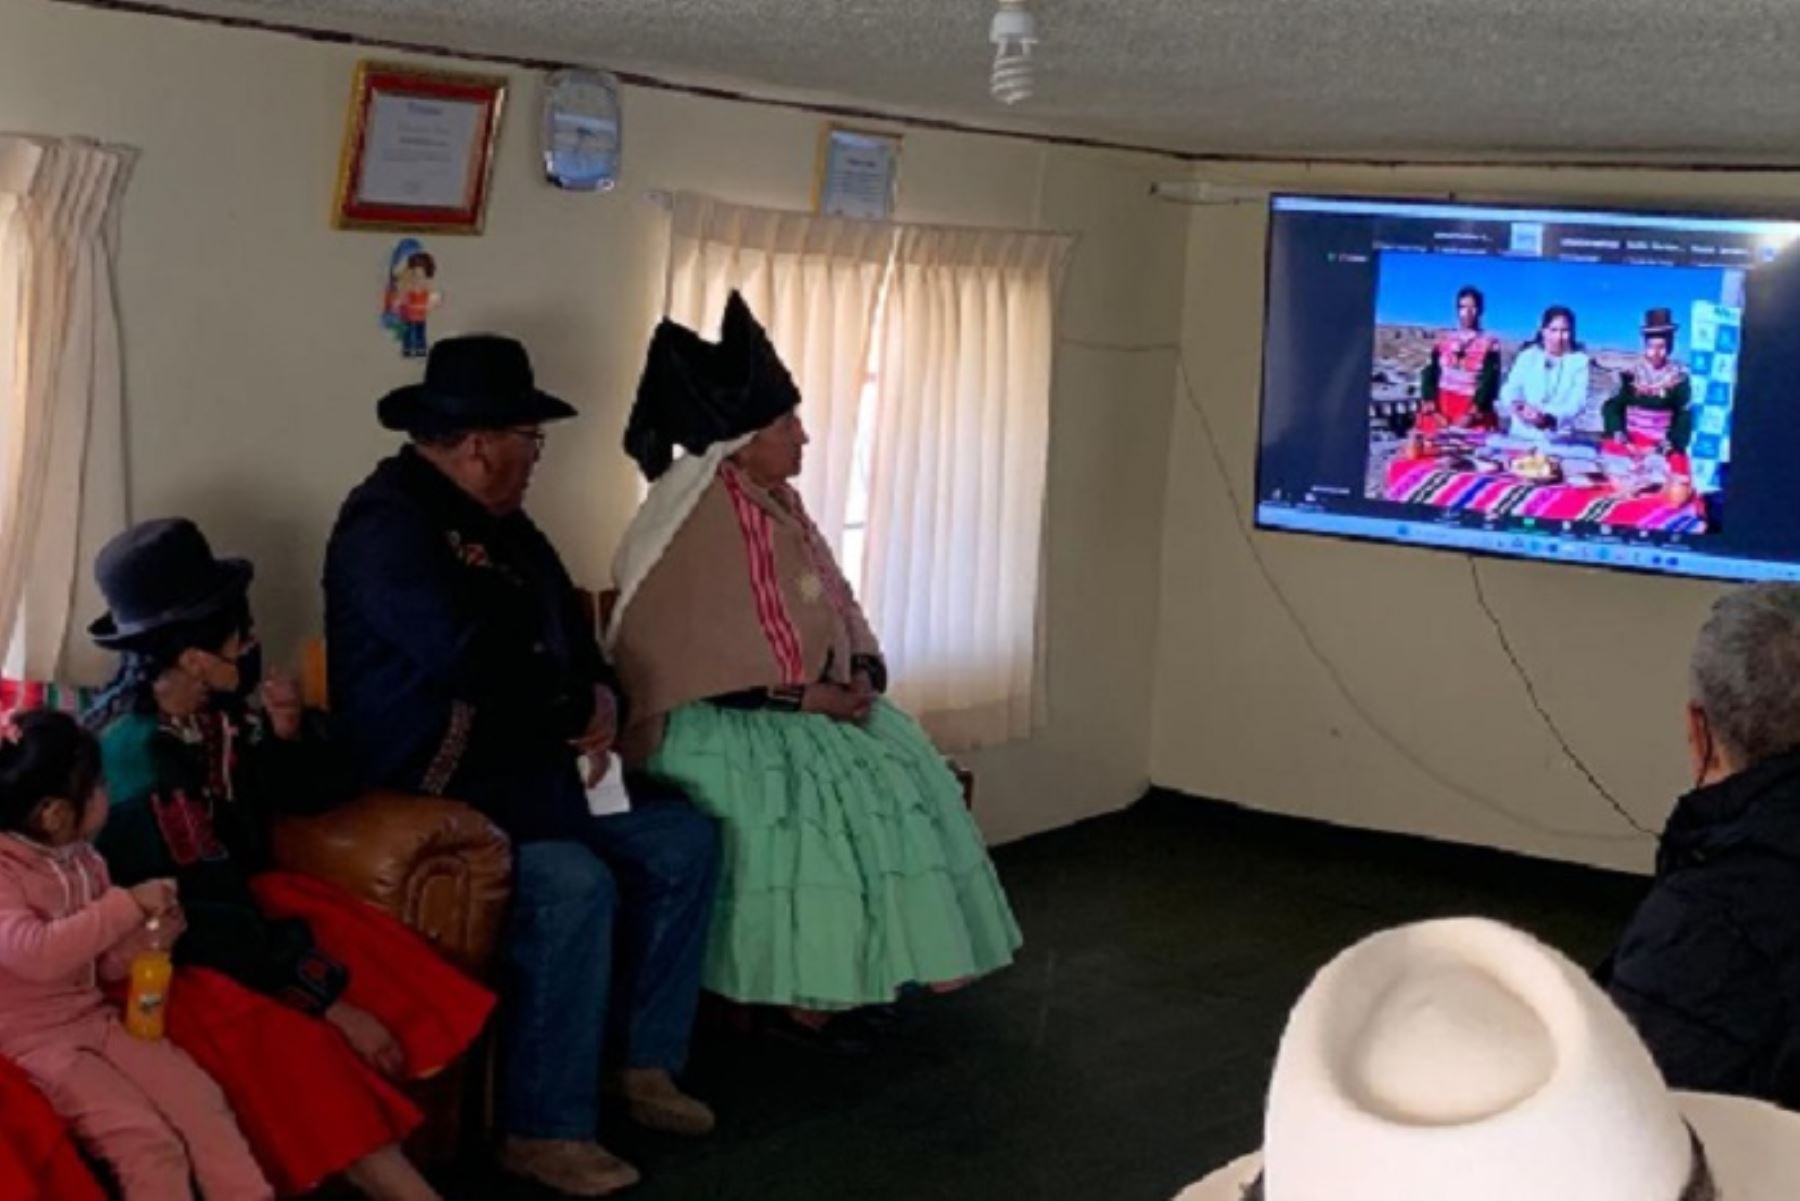 El próximo programa educativo de salud se realizará la primera semana de julio, desde el Cusco, en la lengua quechua, y será transmitido a través del canal de YouTube EsSalud Digital del Cenate.